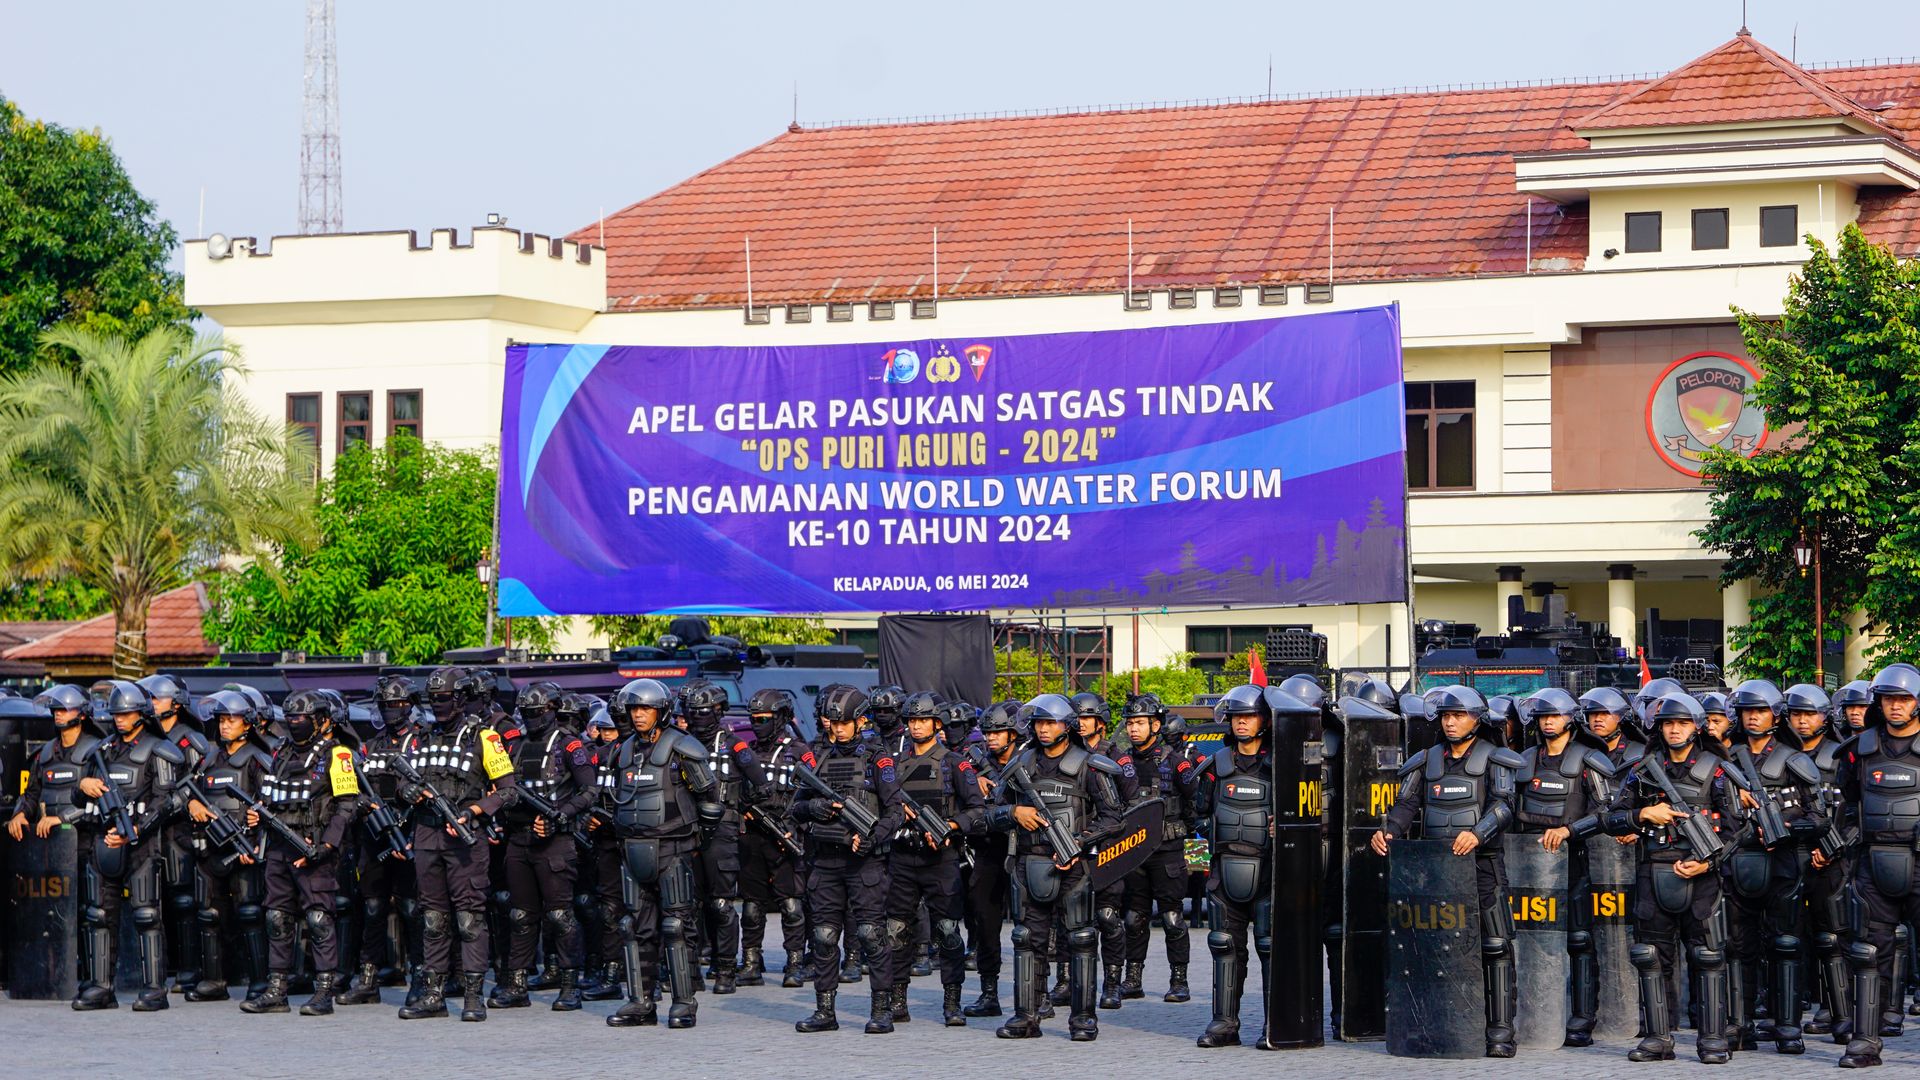 Jelang Pengamanan WWF ke-10 di Bali, Kobrimob Polri Laksanakan Apel Gelar Pasukan